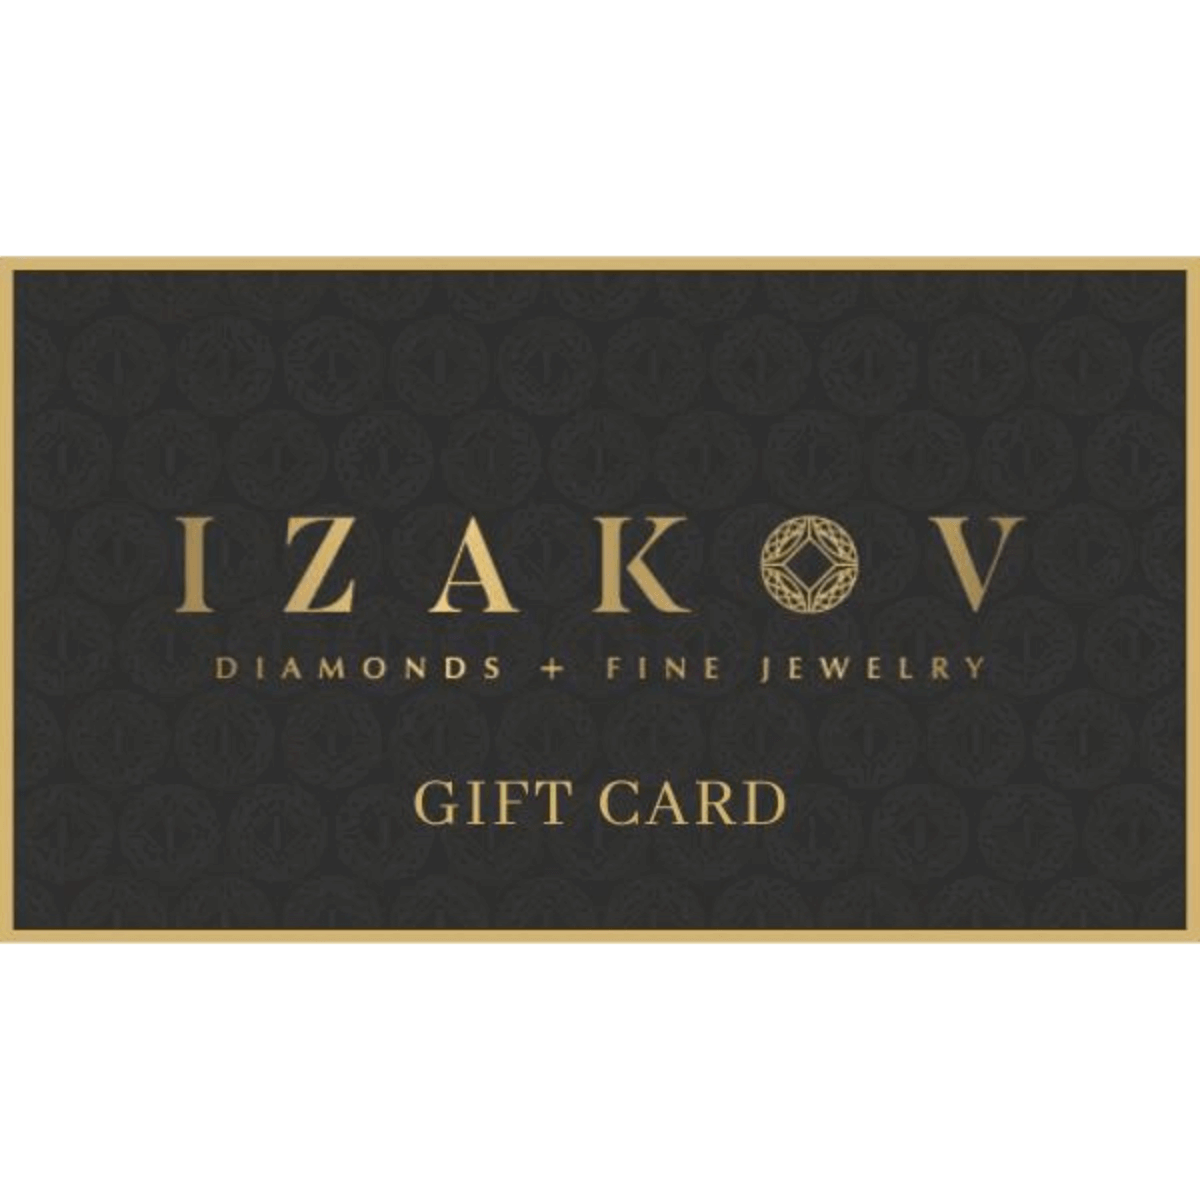 Izakov Gift Card - - Izakov Diamonds + Fine Jewelry